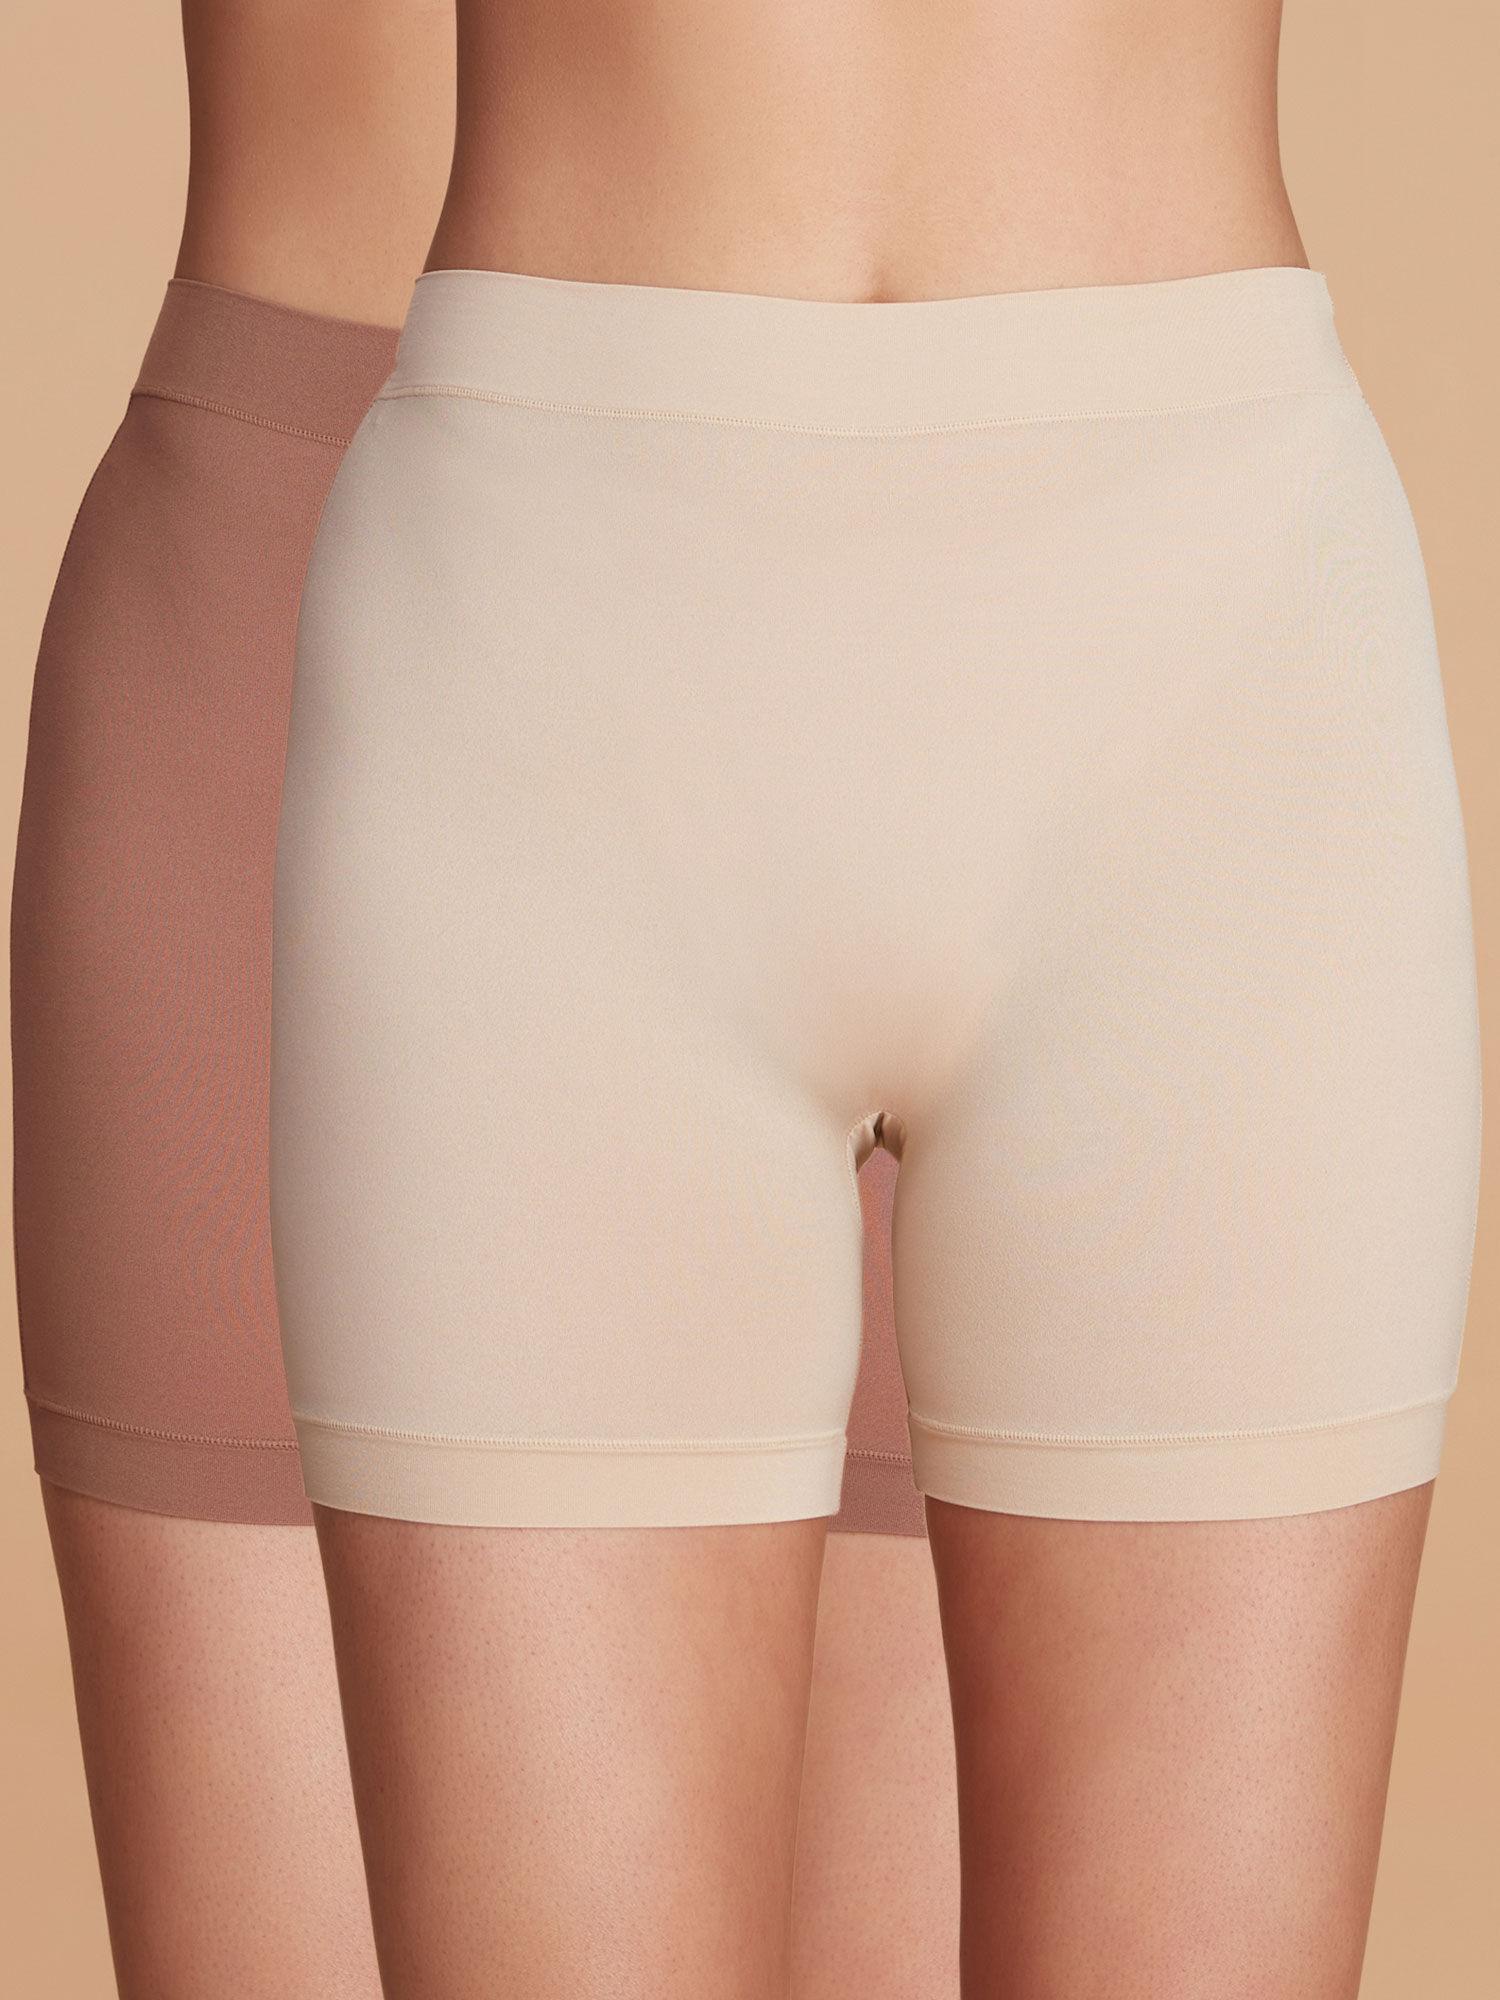 anti-chafe-shorts-nyp357---brown-and-cream-(set-of-2)